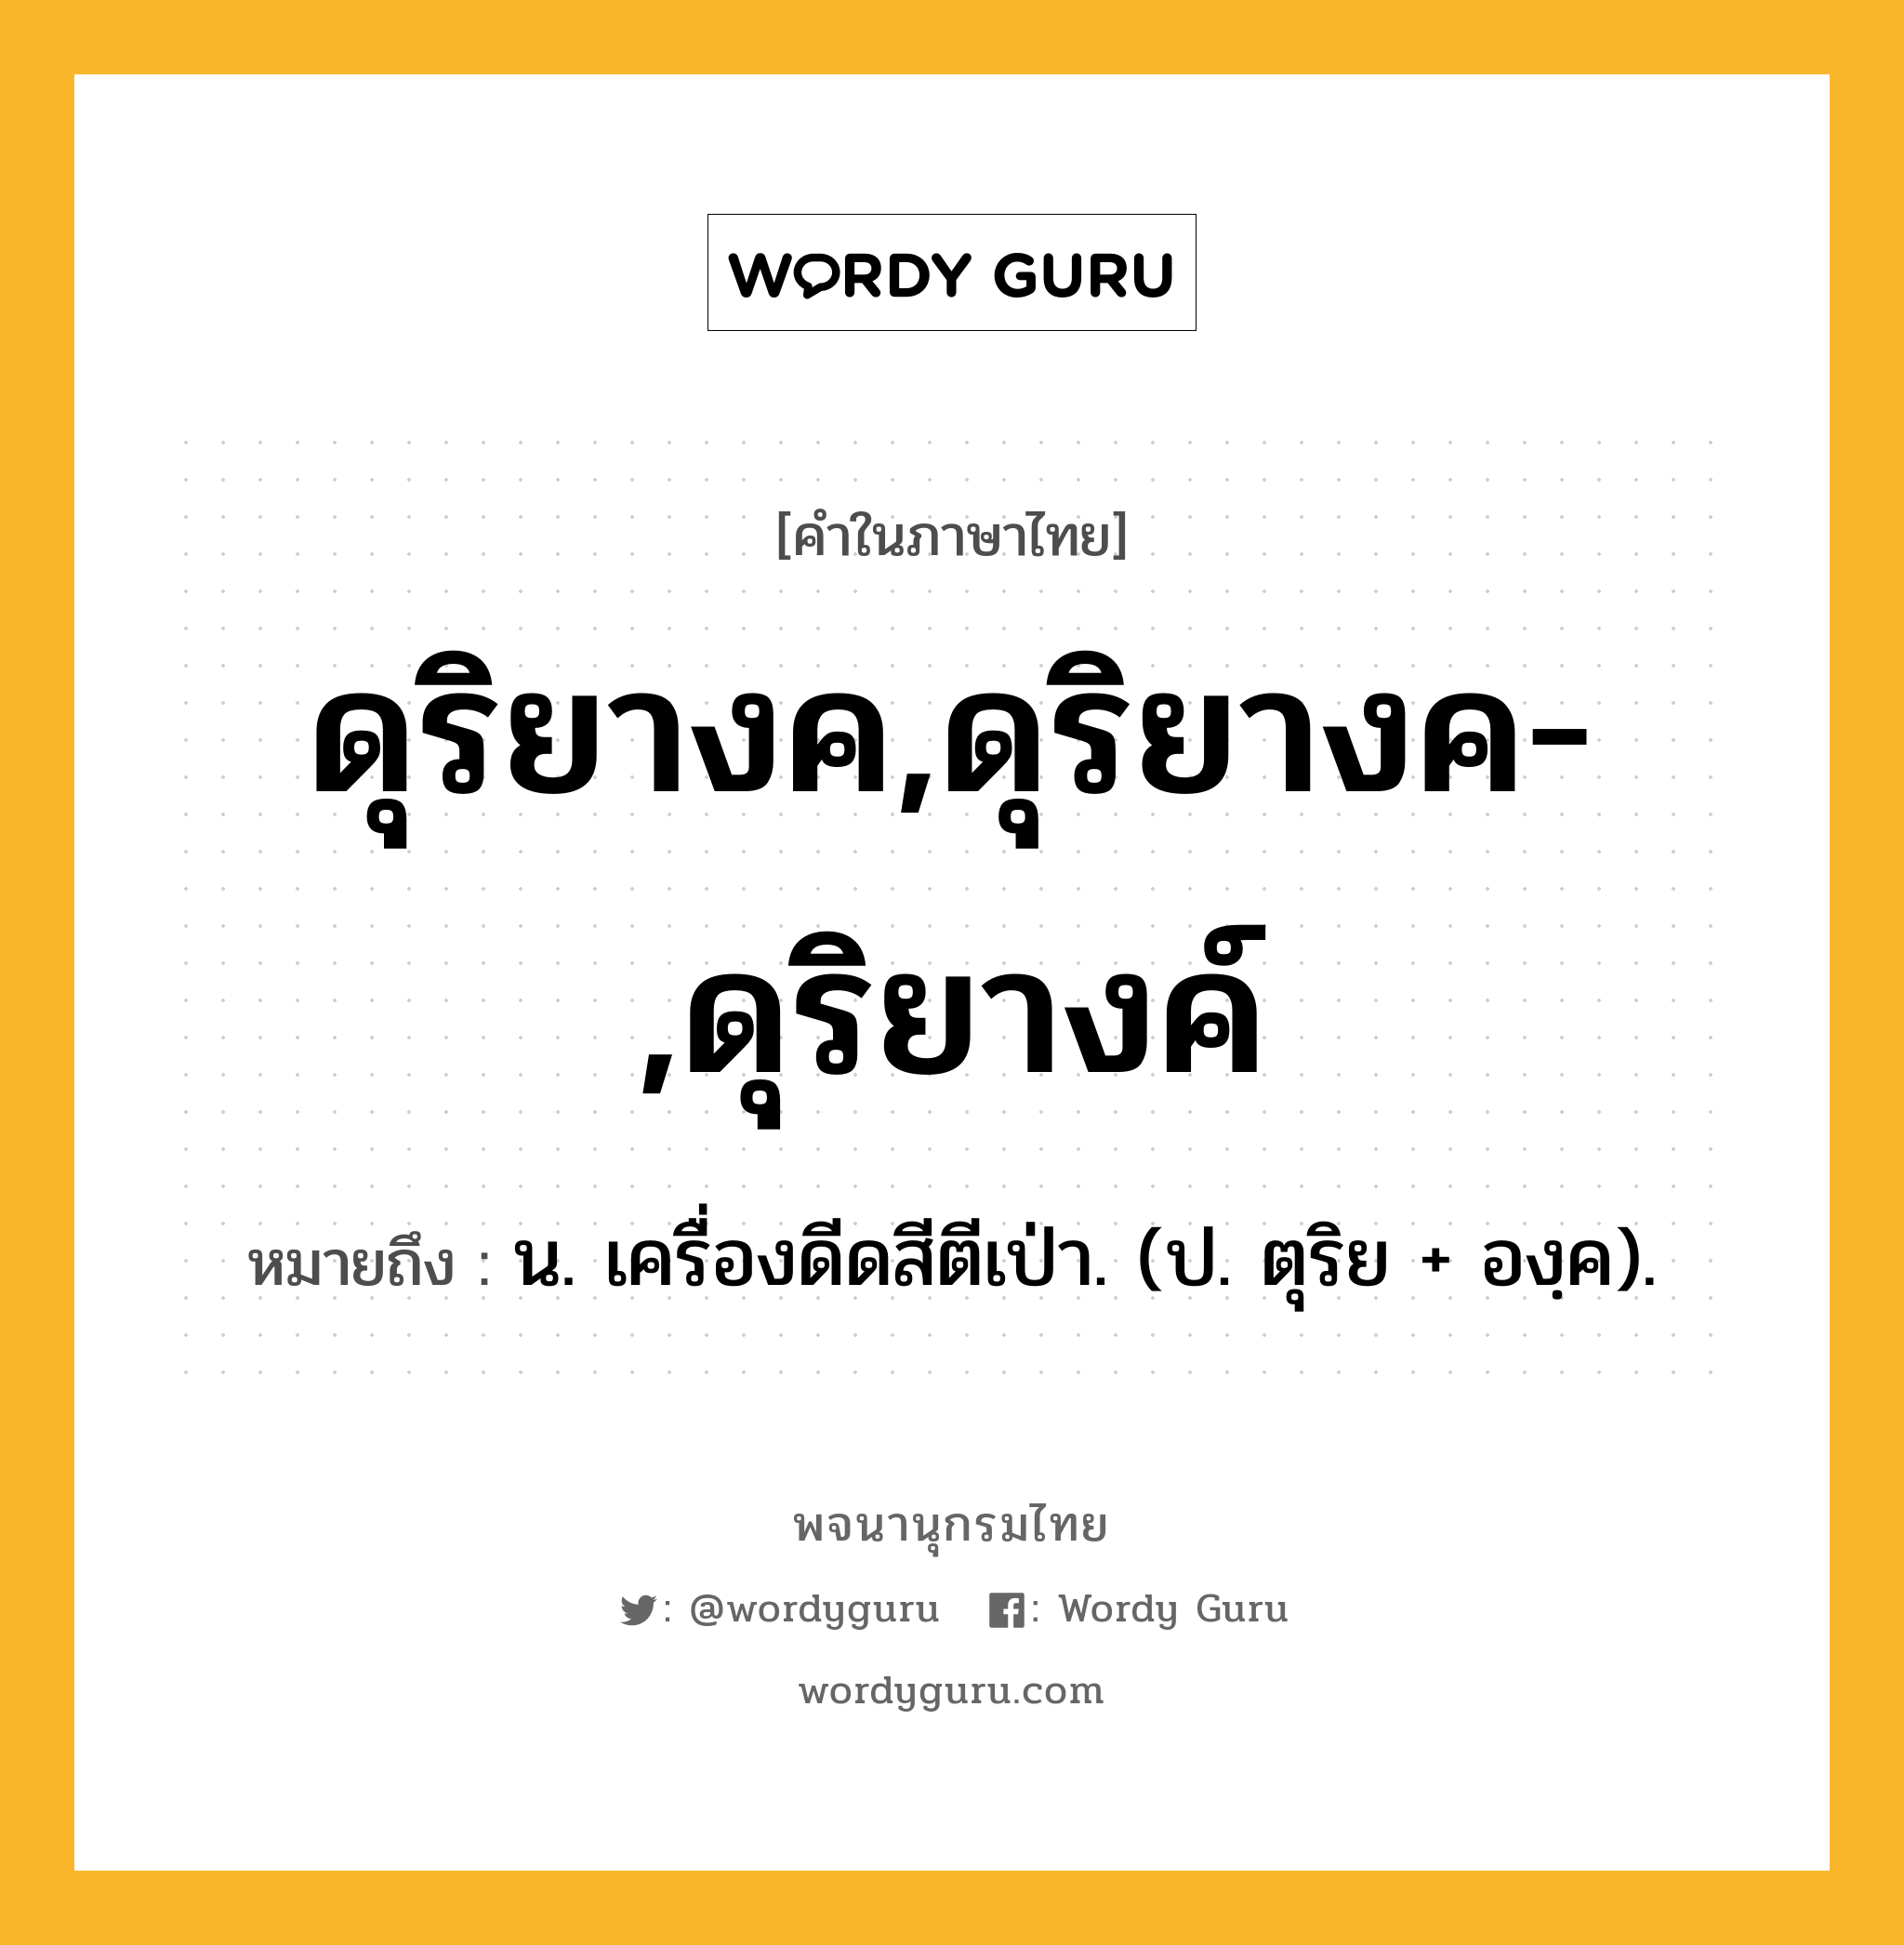 ดุริยางค,ดุริยางค-,ดุริยางค์ หมายถึงอะไร?, คำในภาษาไทย ดุริยางค,ดุริยางค-,ดุริยางค์ หมายถึง น. เครื่องดีดสีตีเป่า. (ป. ตุริย + องฺค).